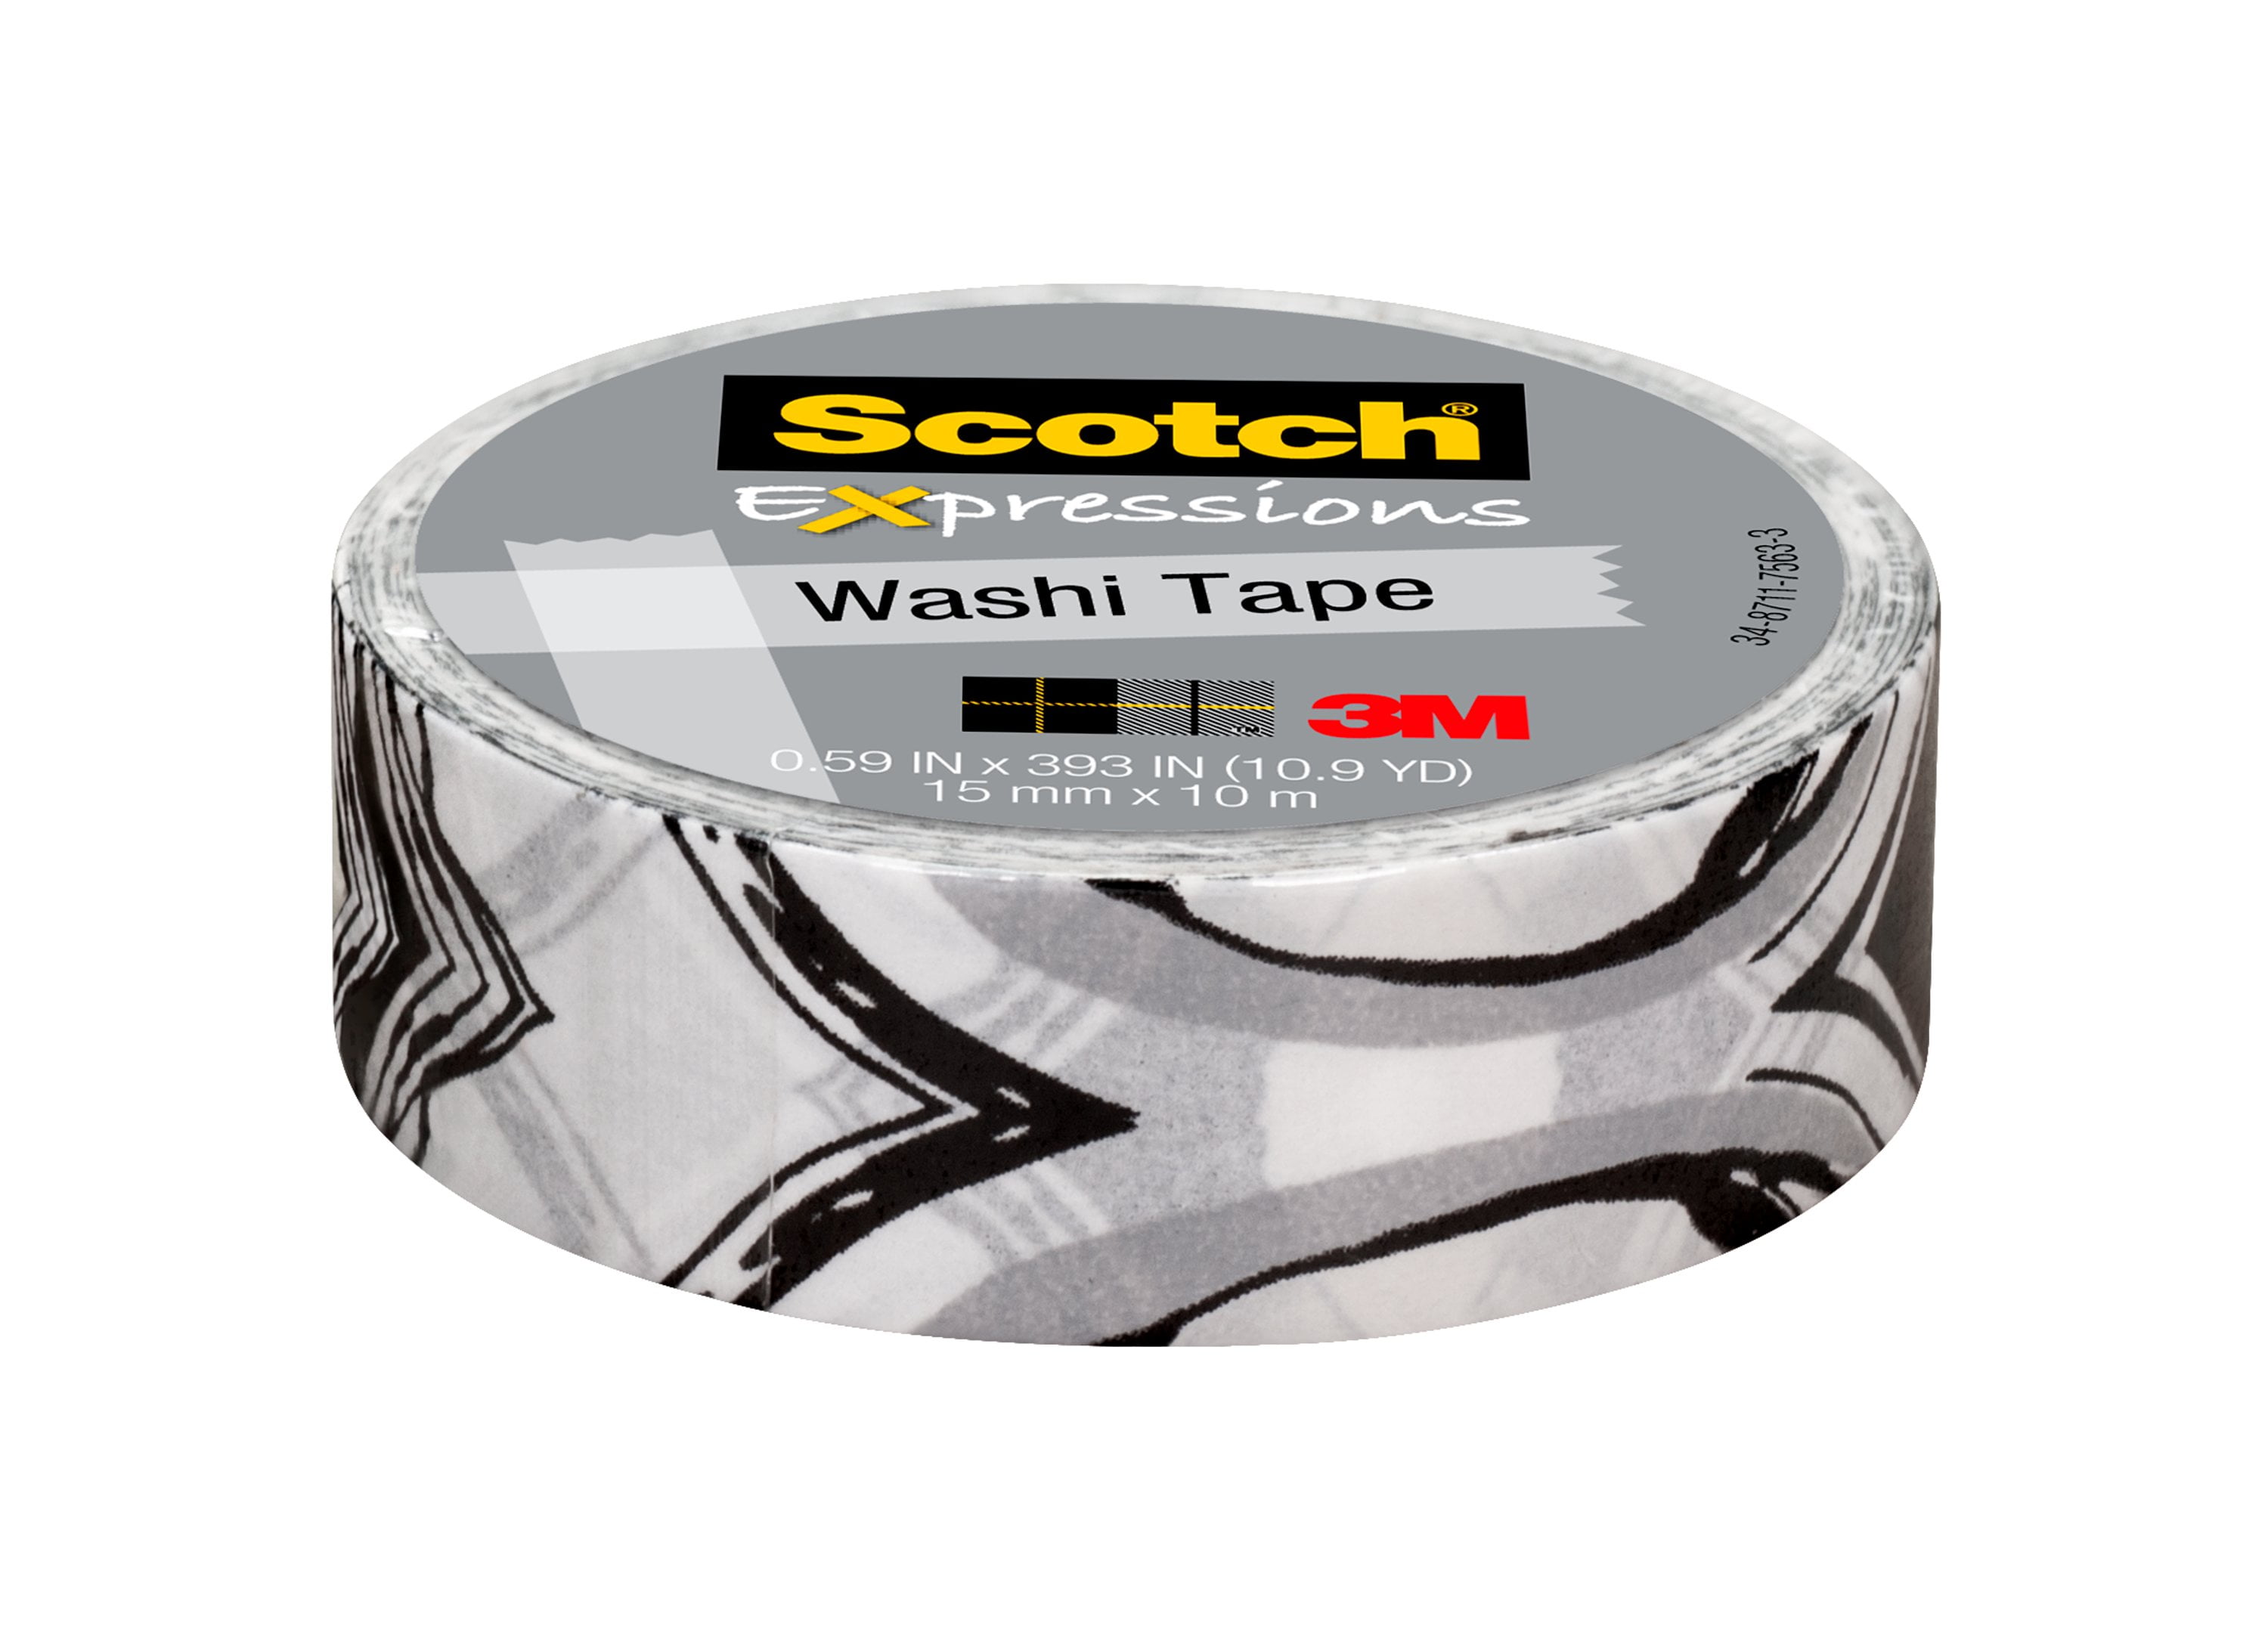 Washi Tape - Black - 15mm x 10 metres - High Quality Masking Tape